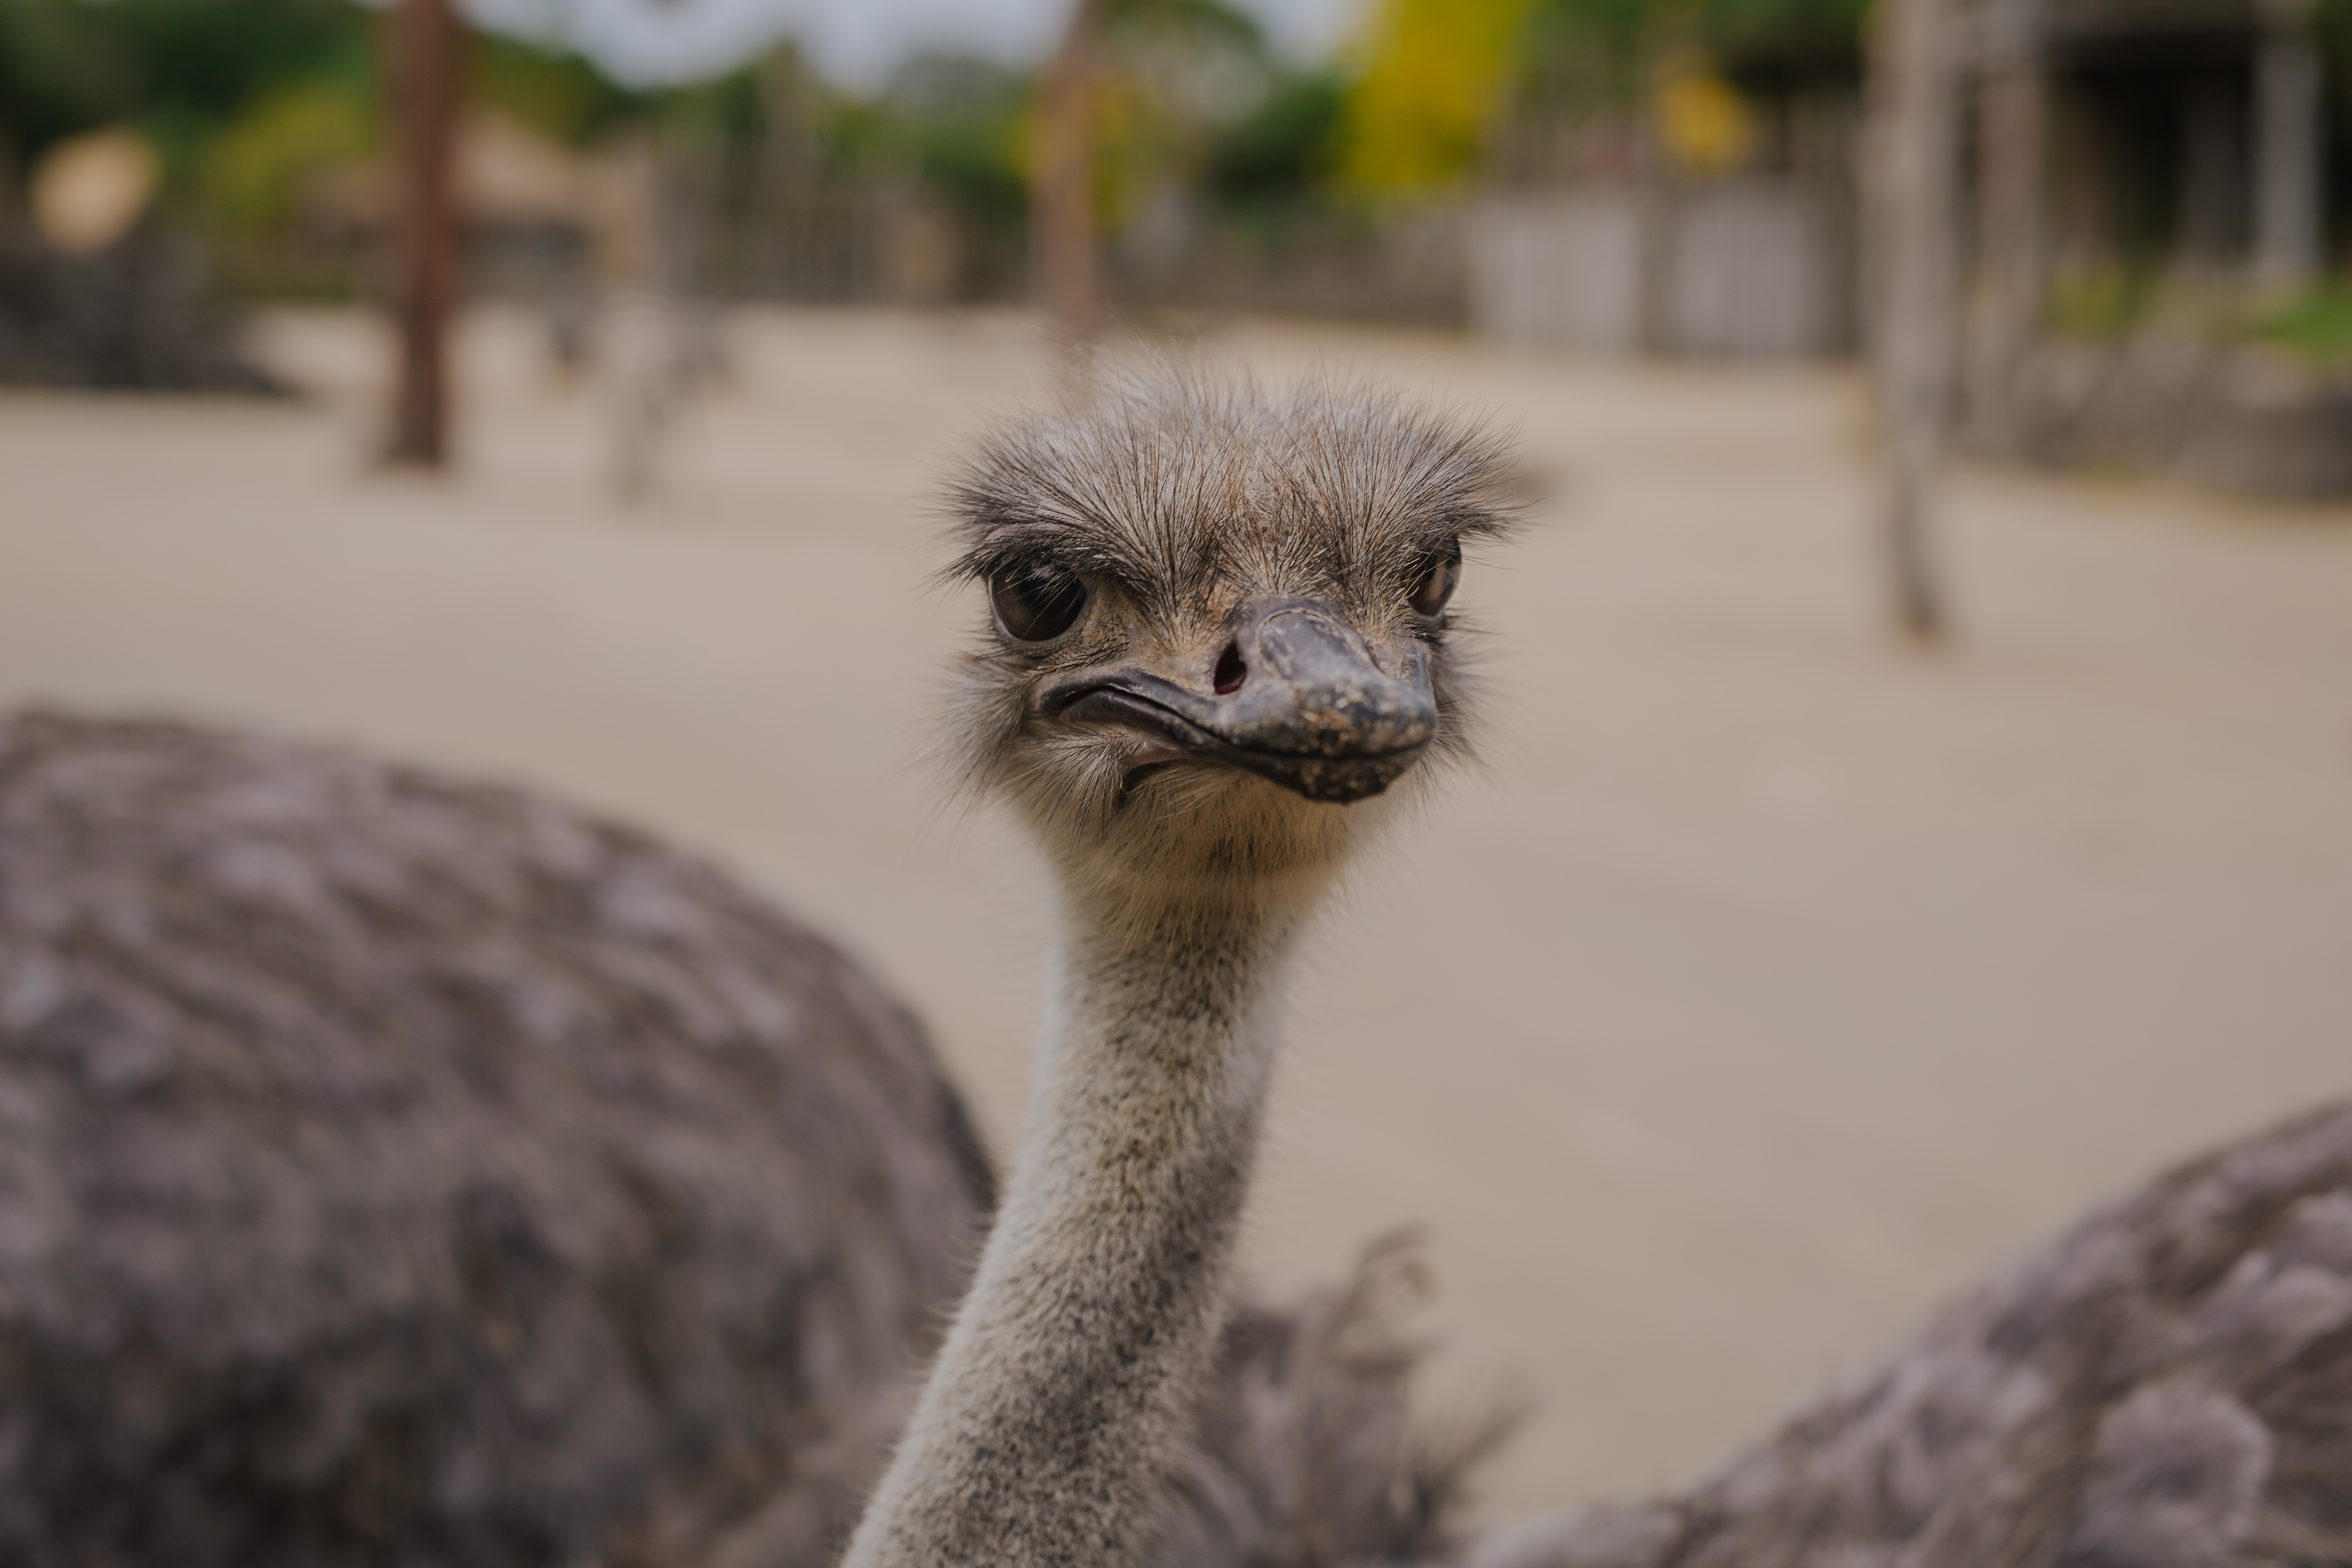 https://rfacdn.nz/zoo/assets/media/auckland-zoo-ostriches-90221-25.jpg